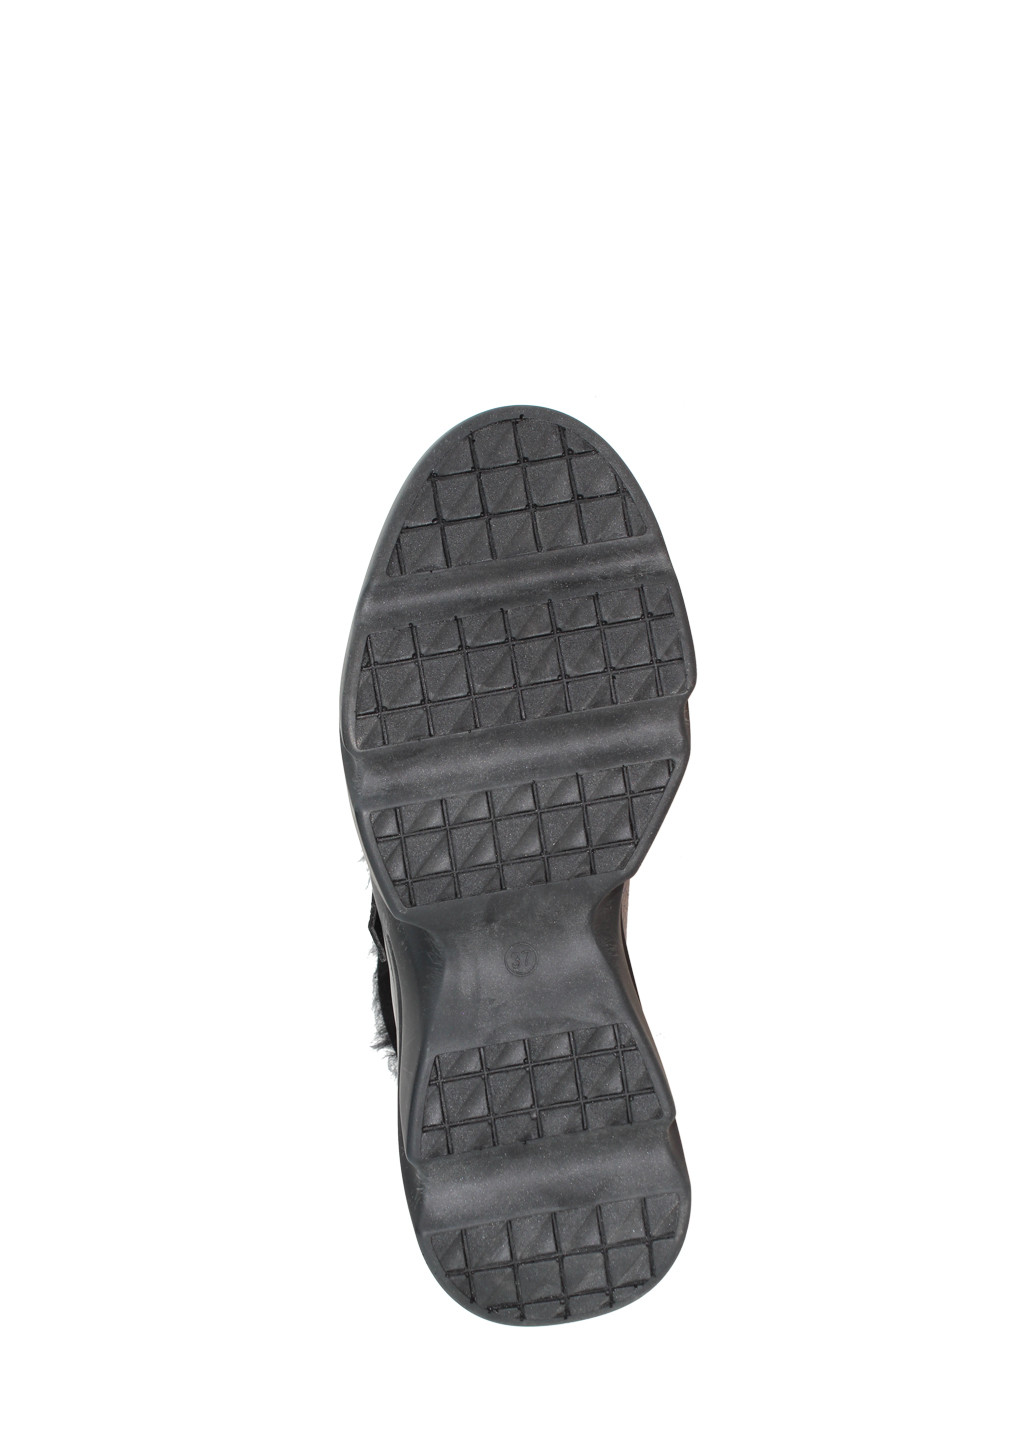 Зимние ботинки rsm-1153 серебряный Sothby's